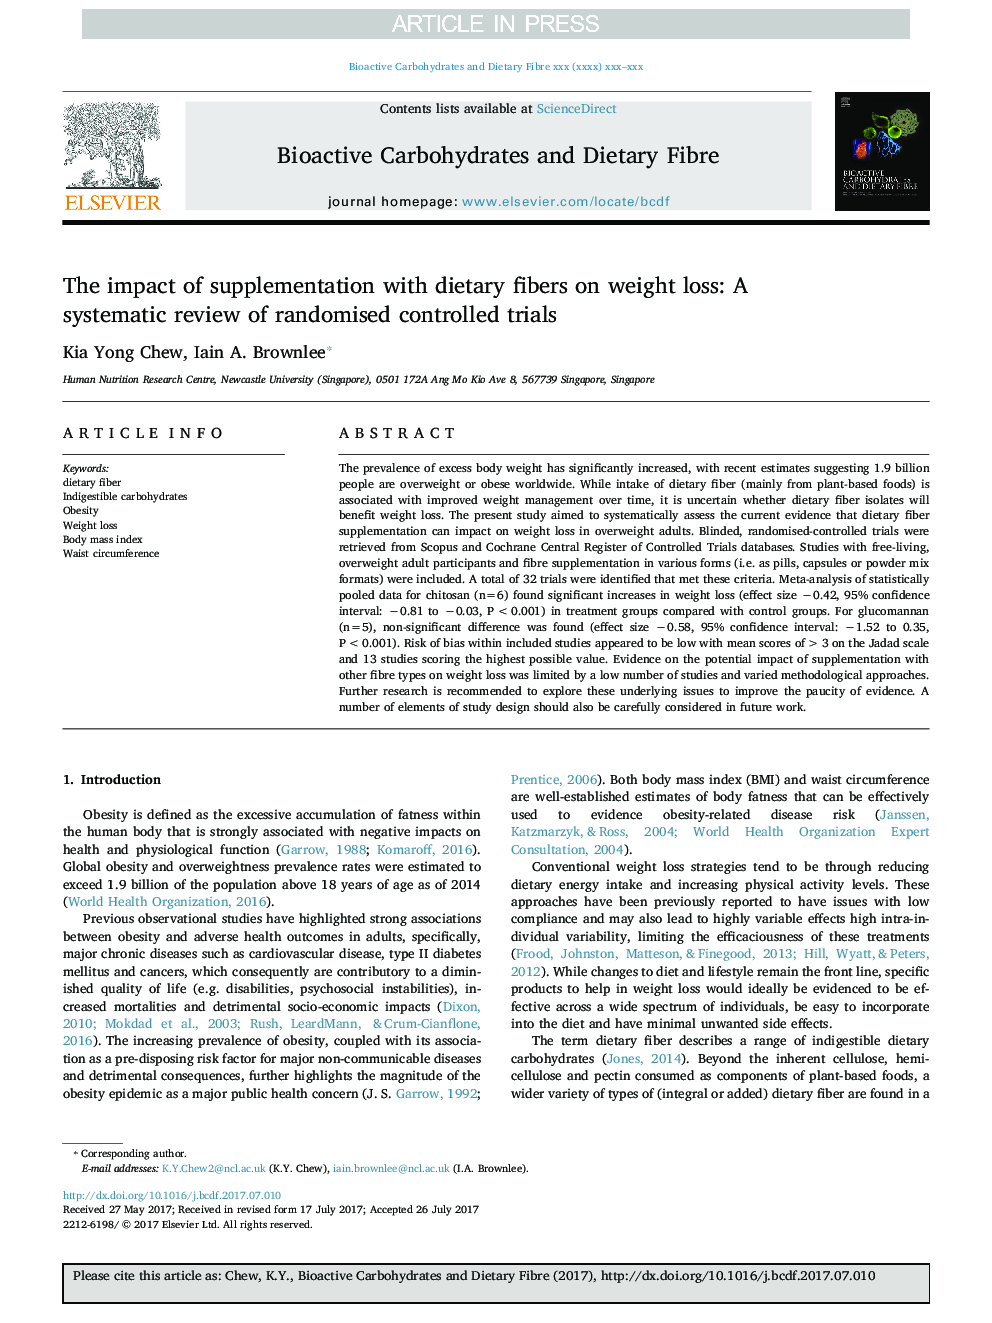 تأثیر مکمل فیبرهای رژیمی بر کاهش وزن: یک بررسی سیستماتیک از آزمایشات تصادفی کنترل شده 